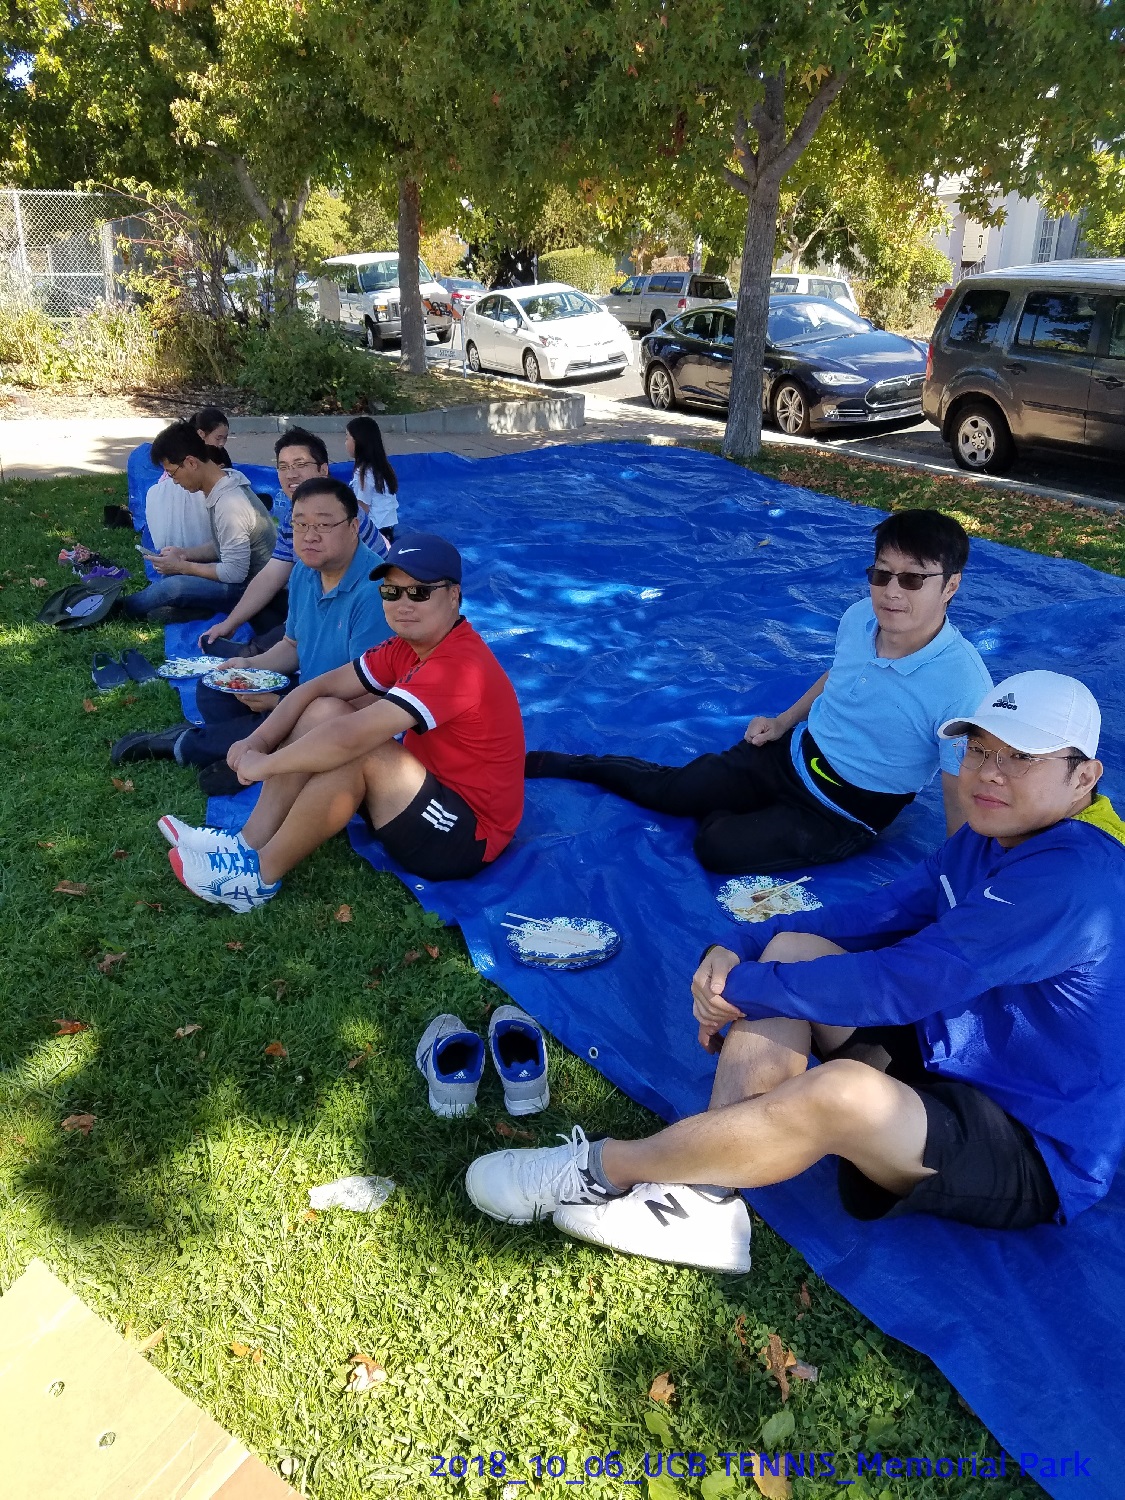 resized_2018_10_06_UCB Tennis at Memorial Park_122105.jpg